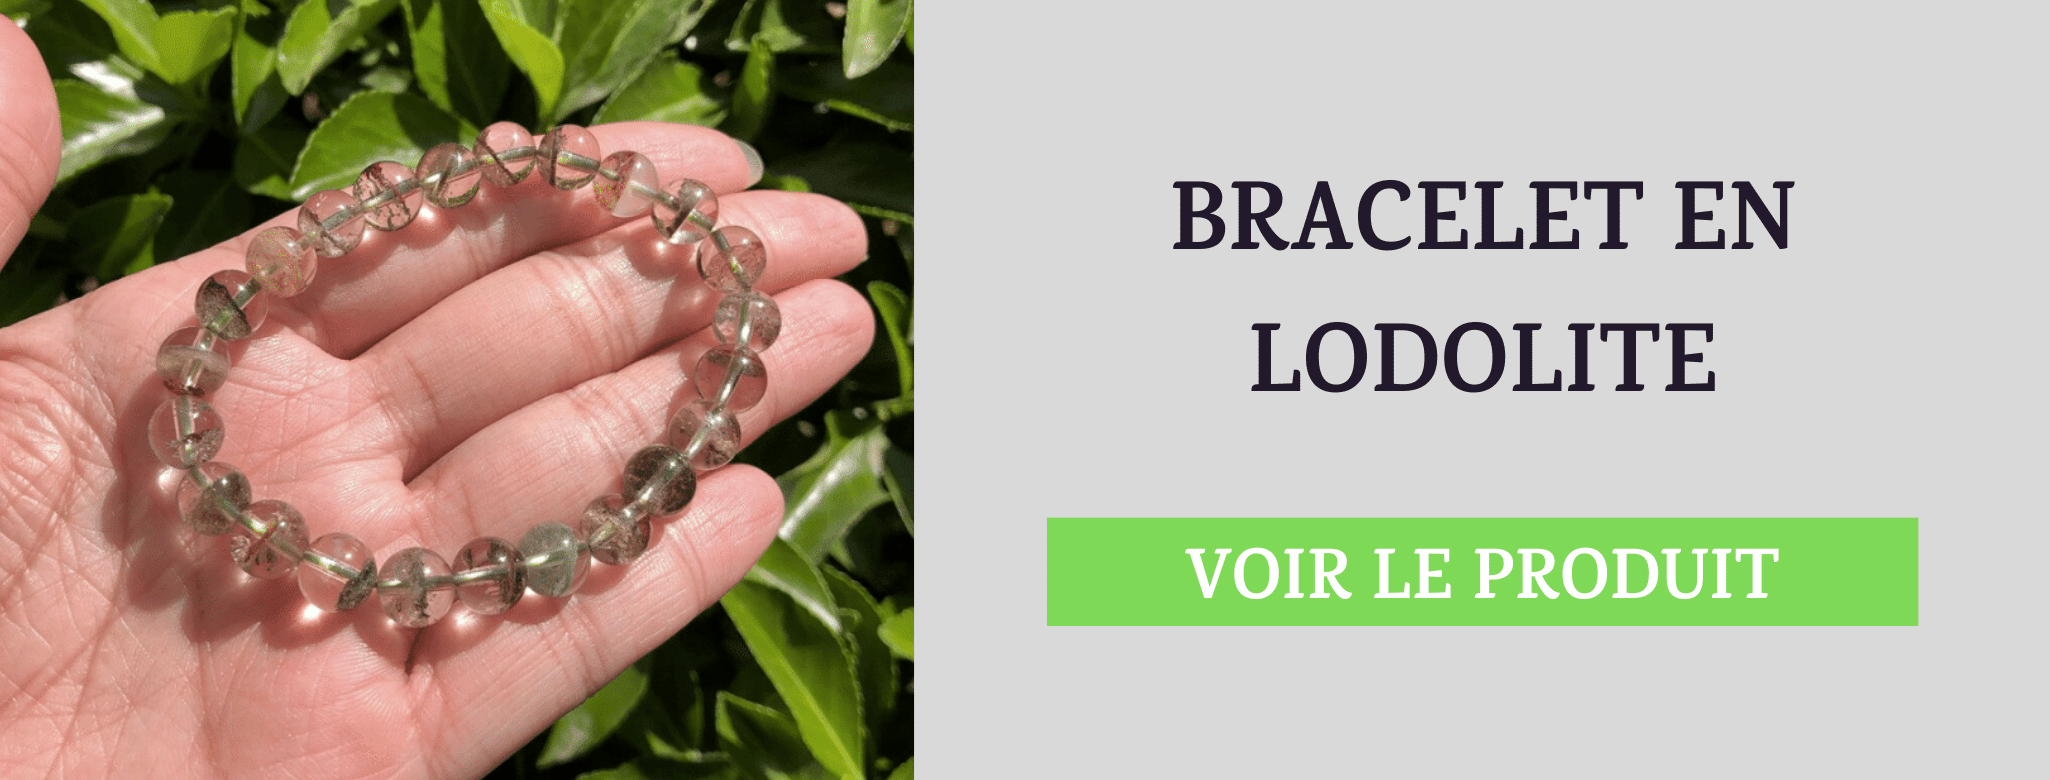 Bracelet Lodolite